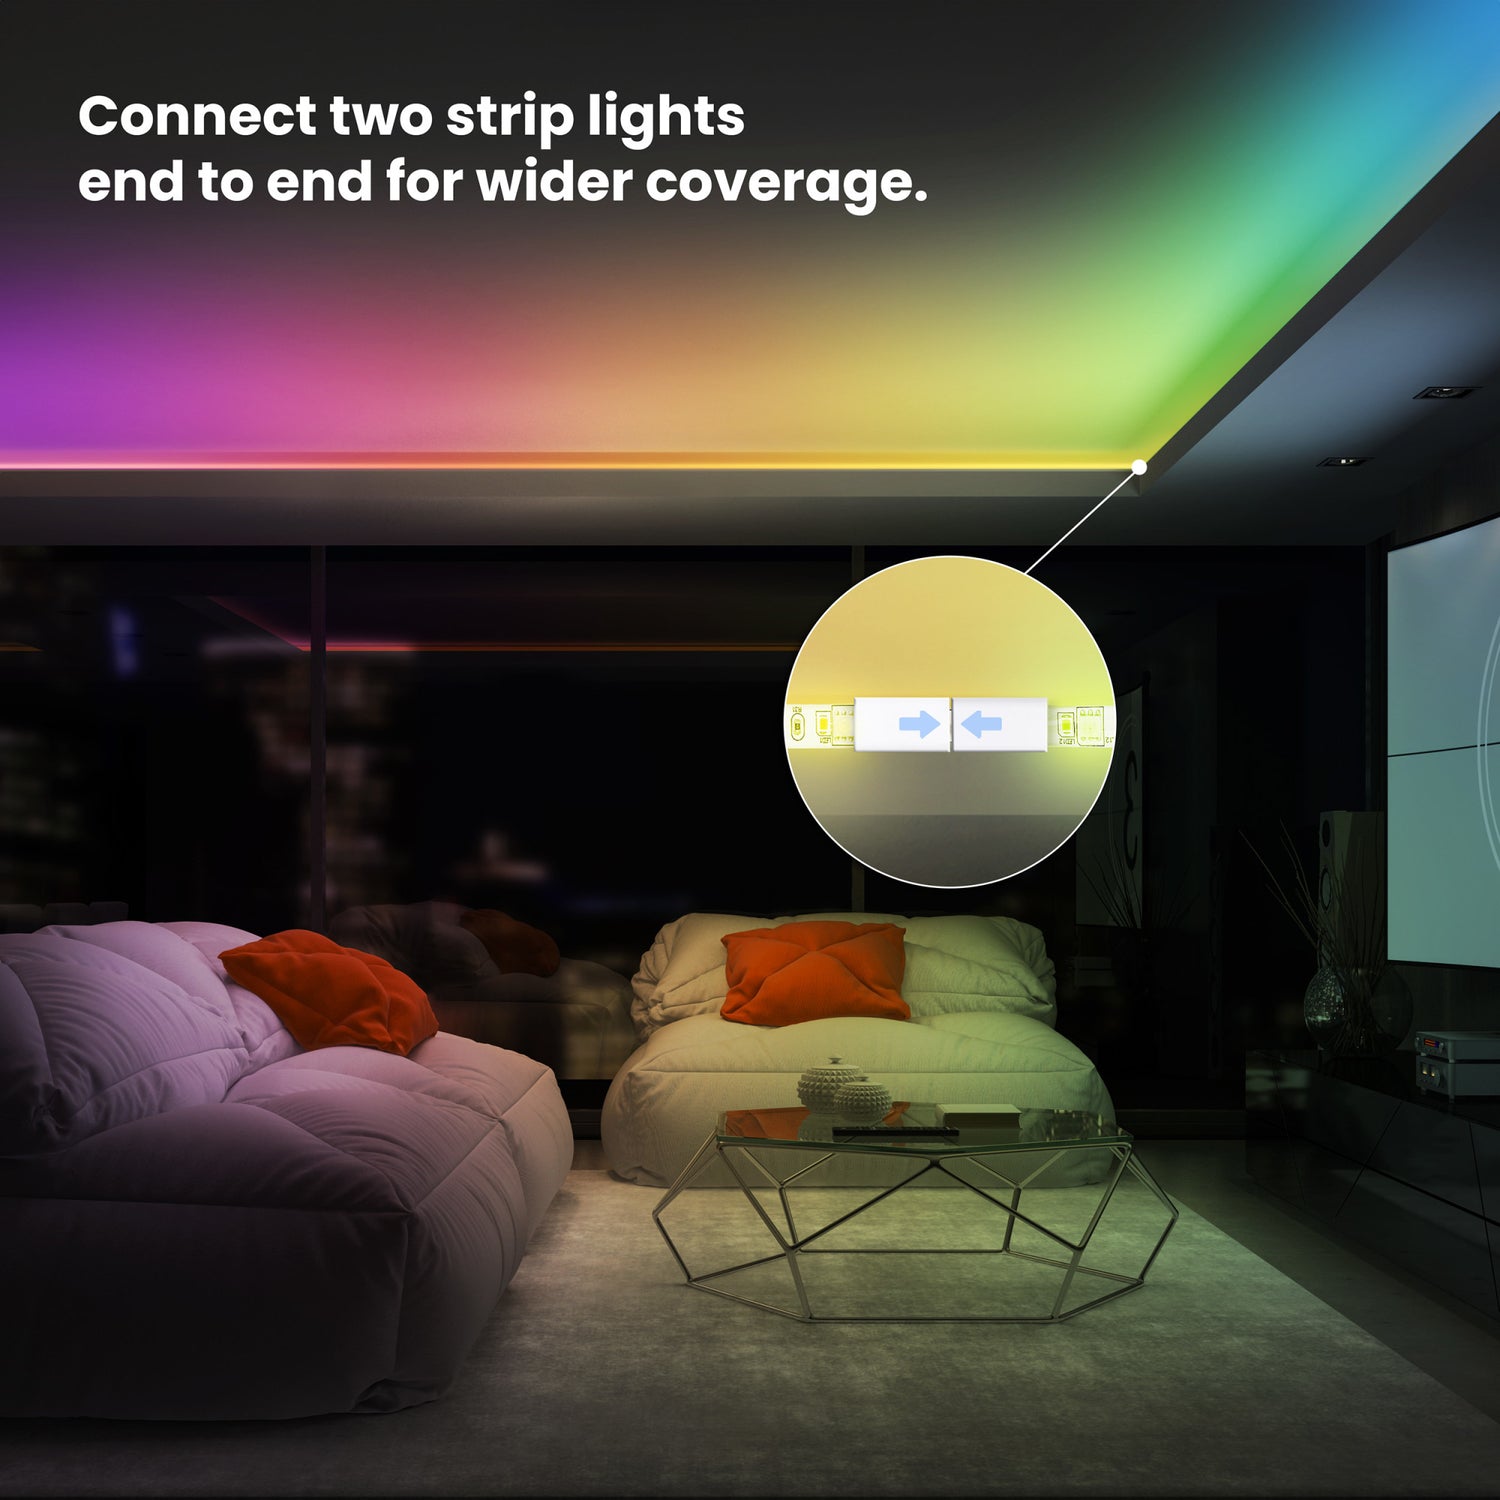 16 ft. Smart Color Chasing Strip Light